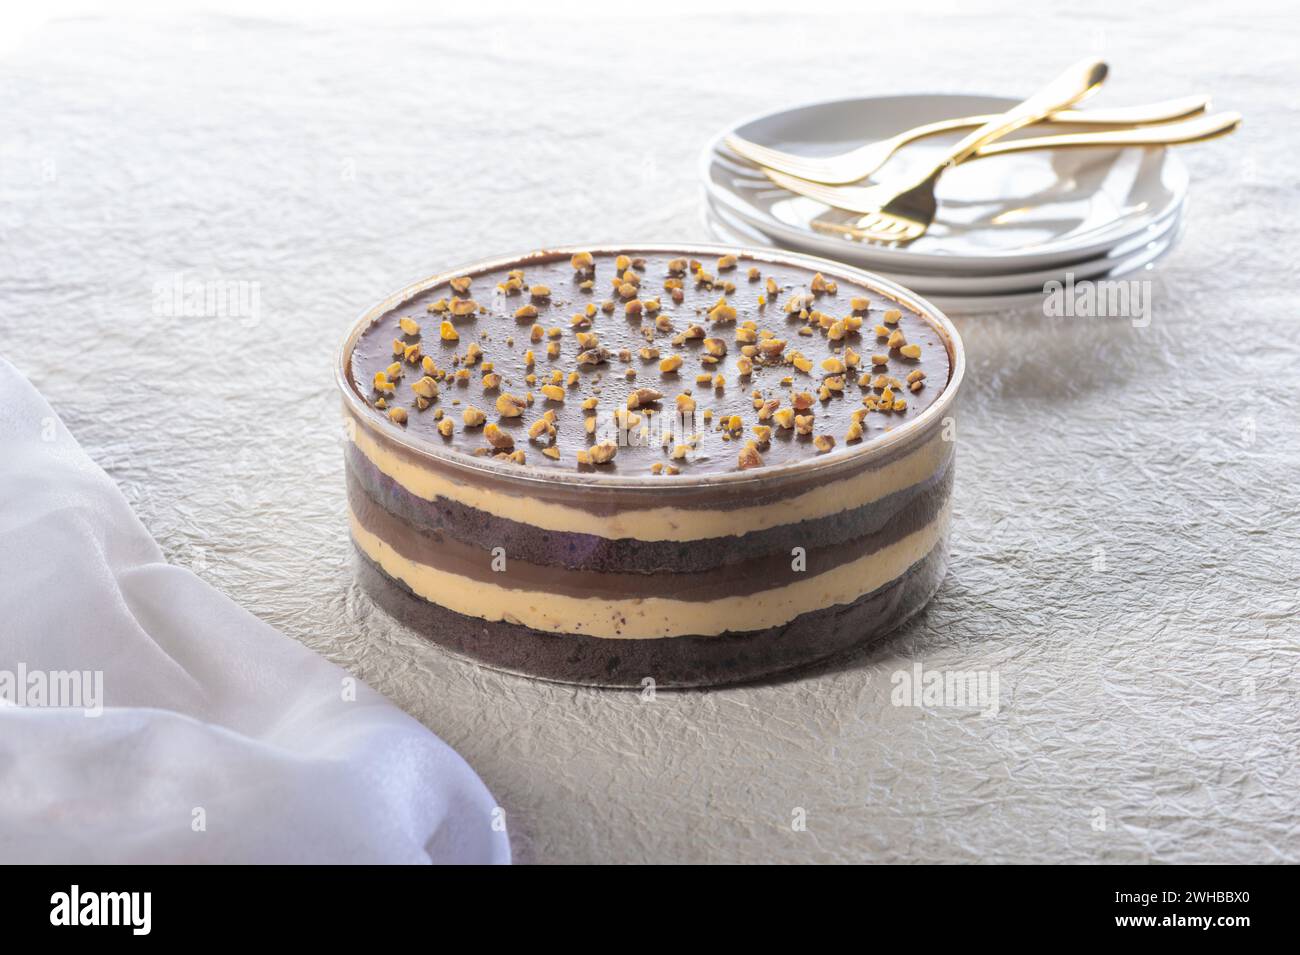 Cheesecake au chocolat avec des noix écrasées sur le dessus Banque D'Images